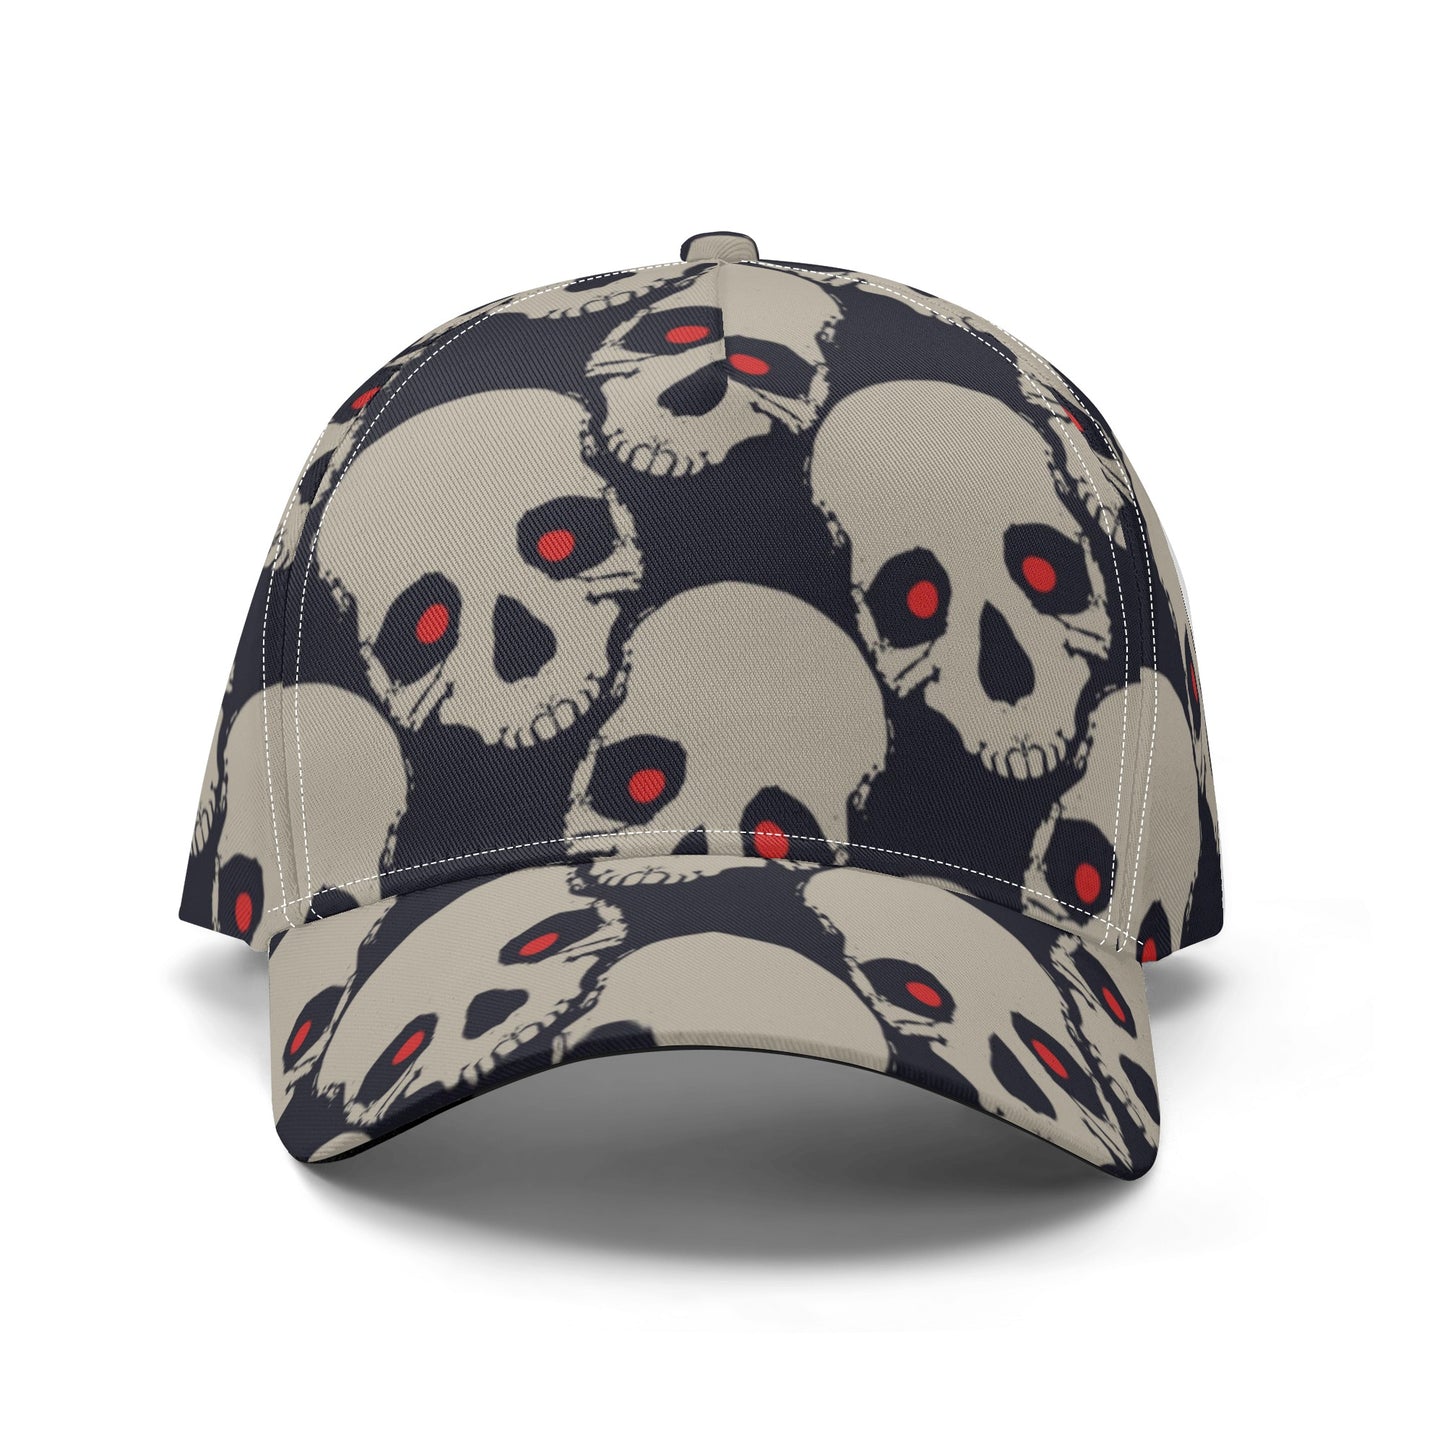 Red Eyed Skull Heads Baseball Caps